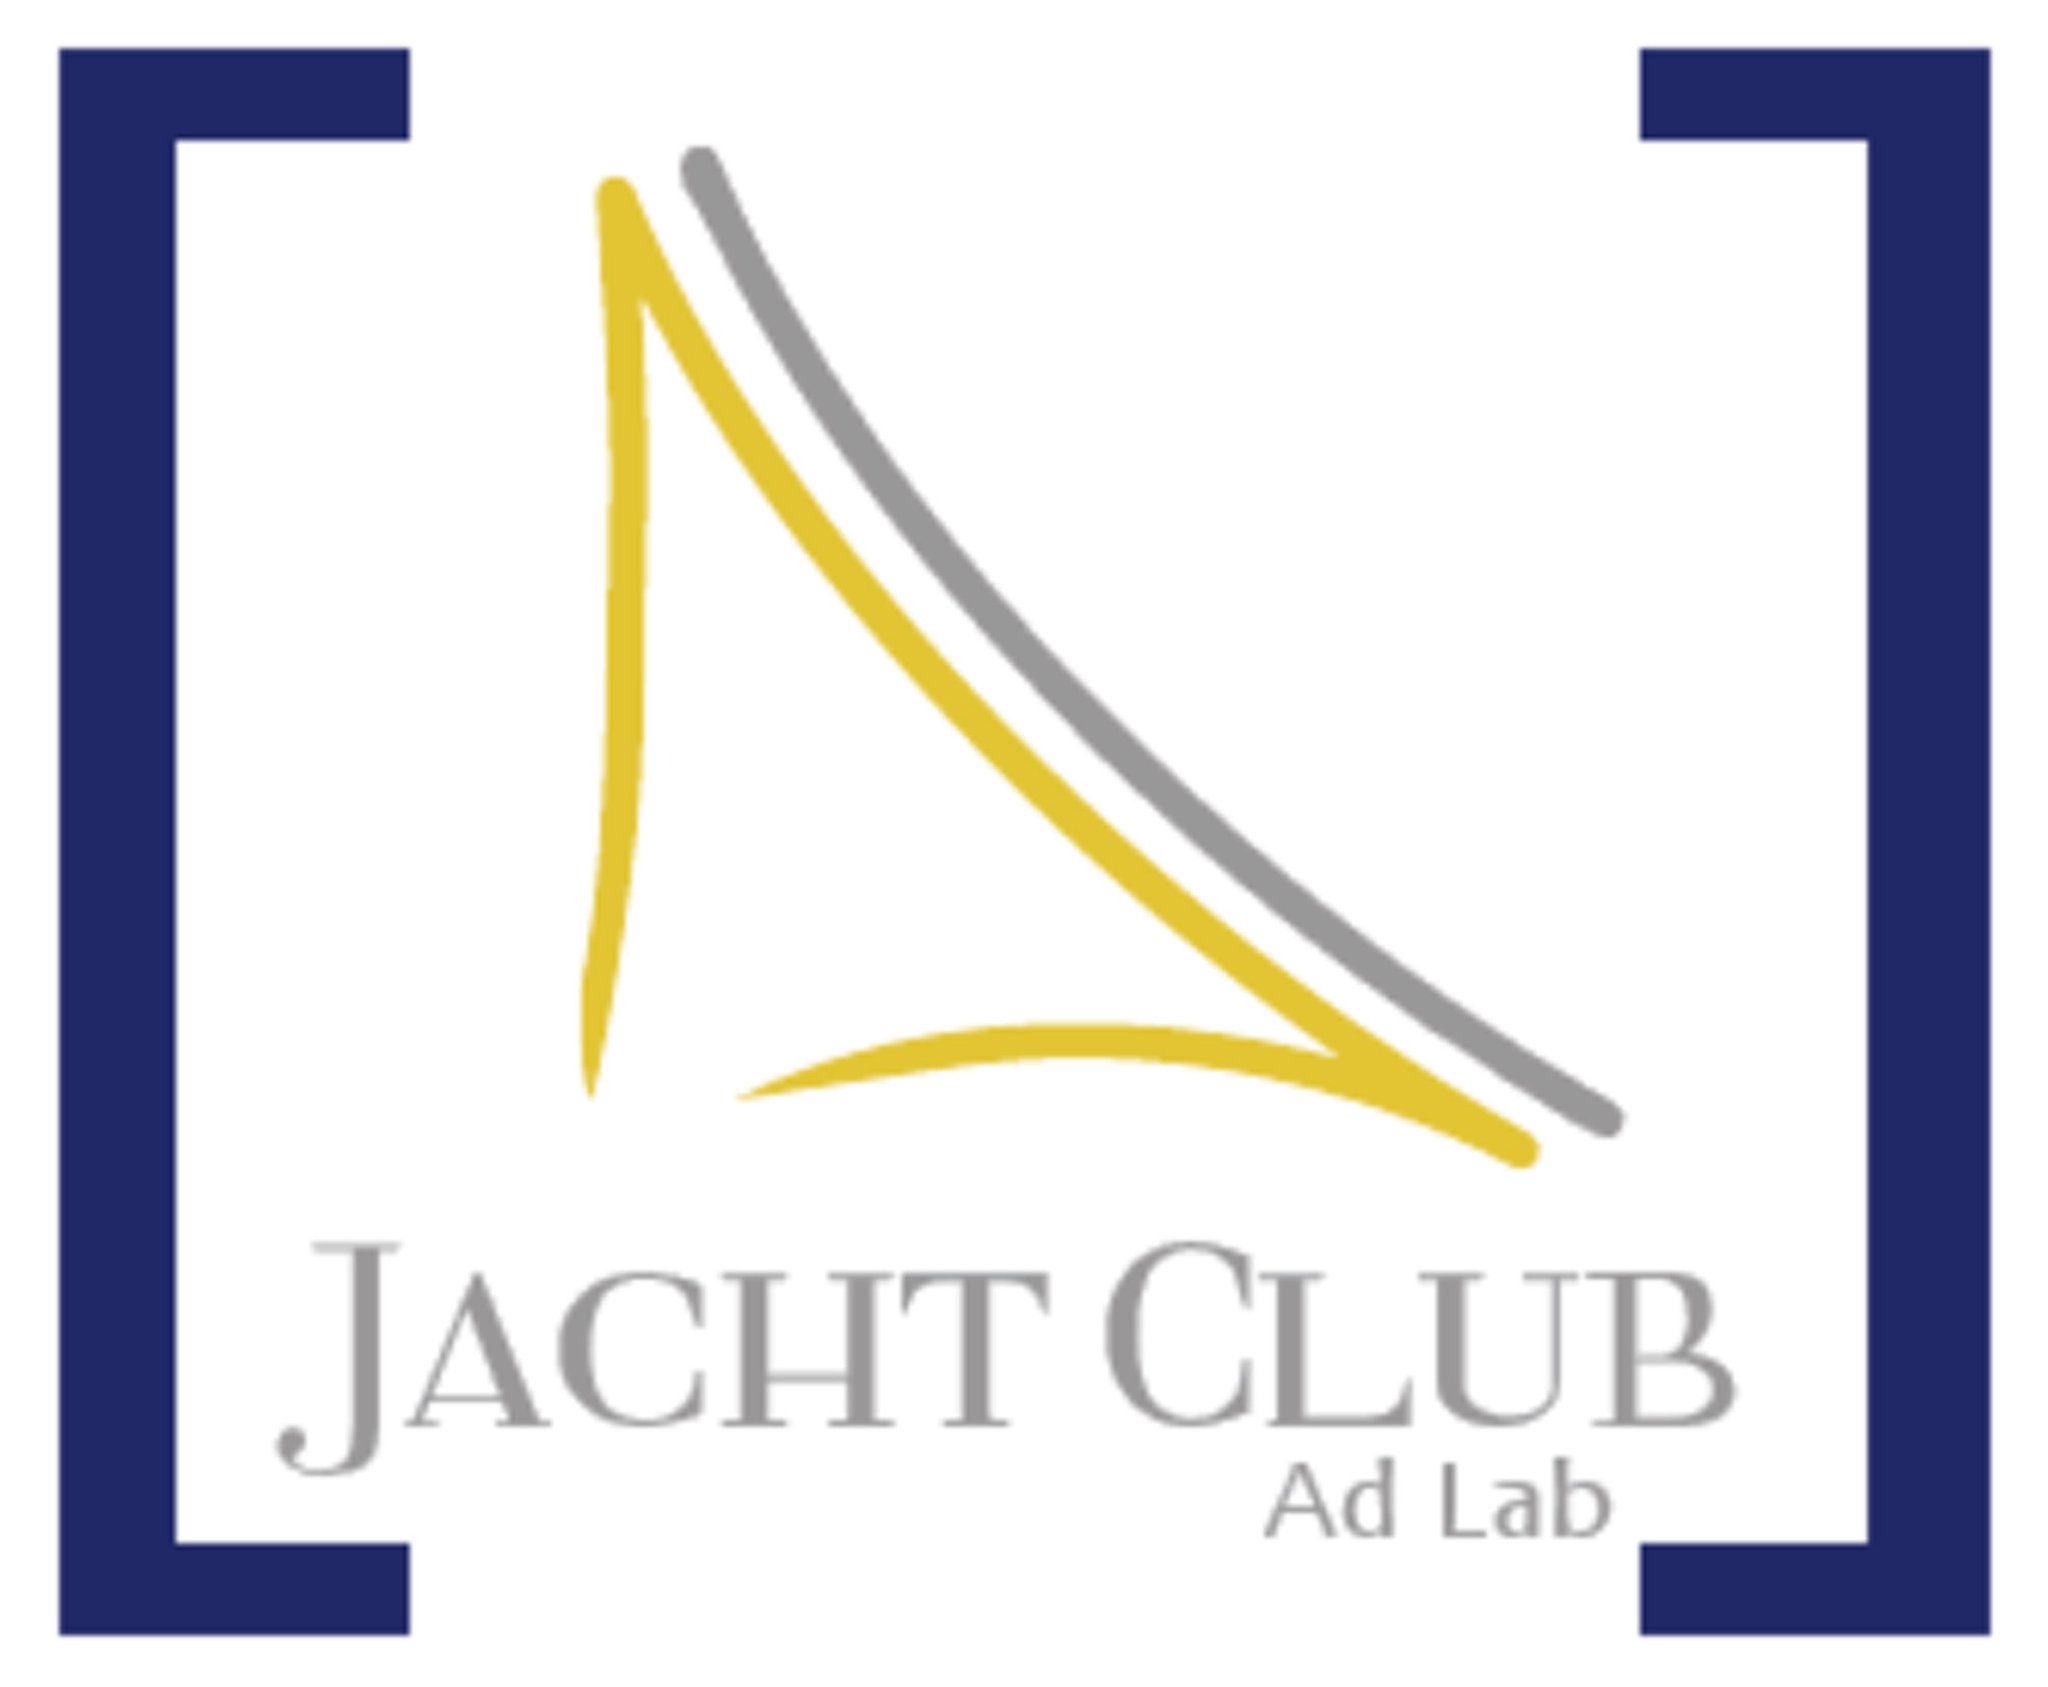 JachtClubLogo.png